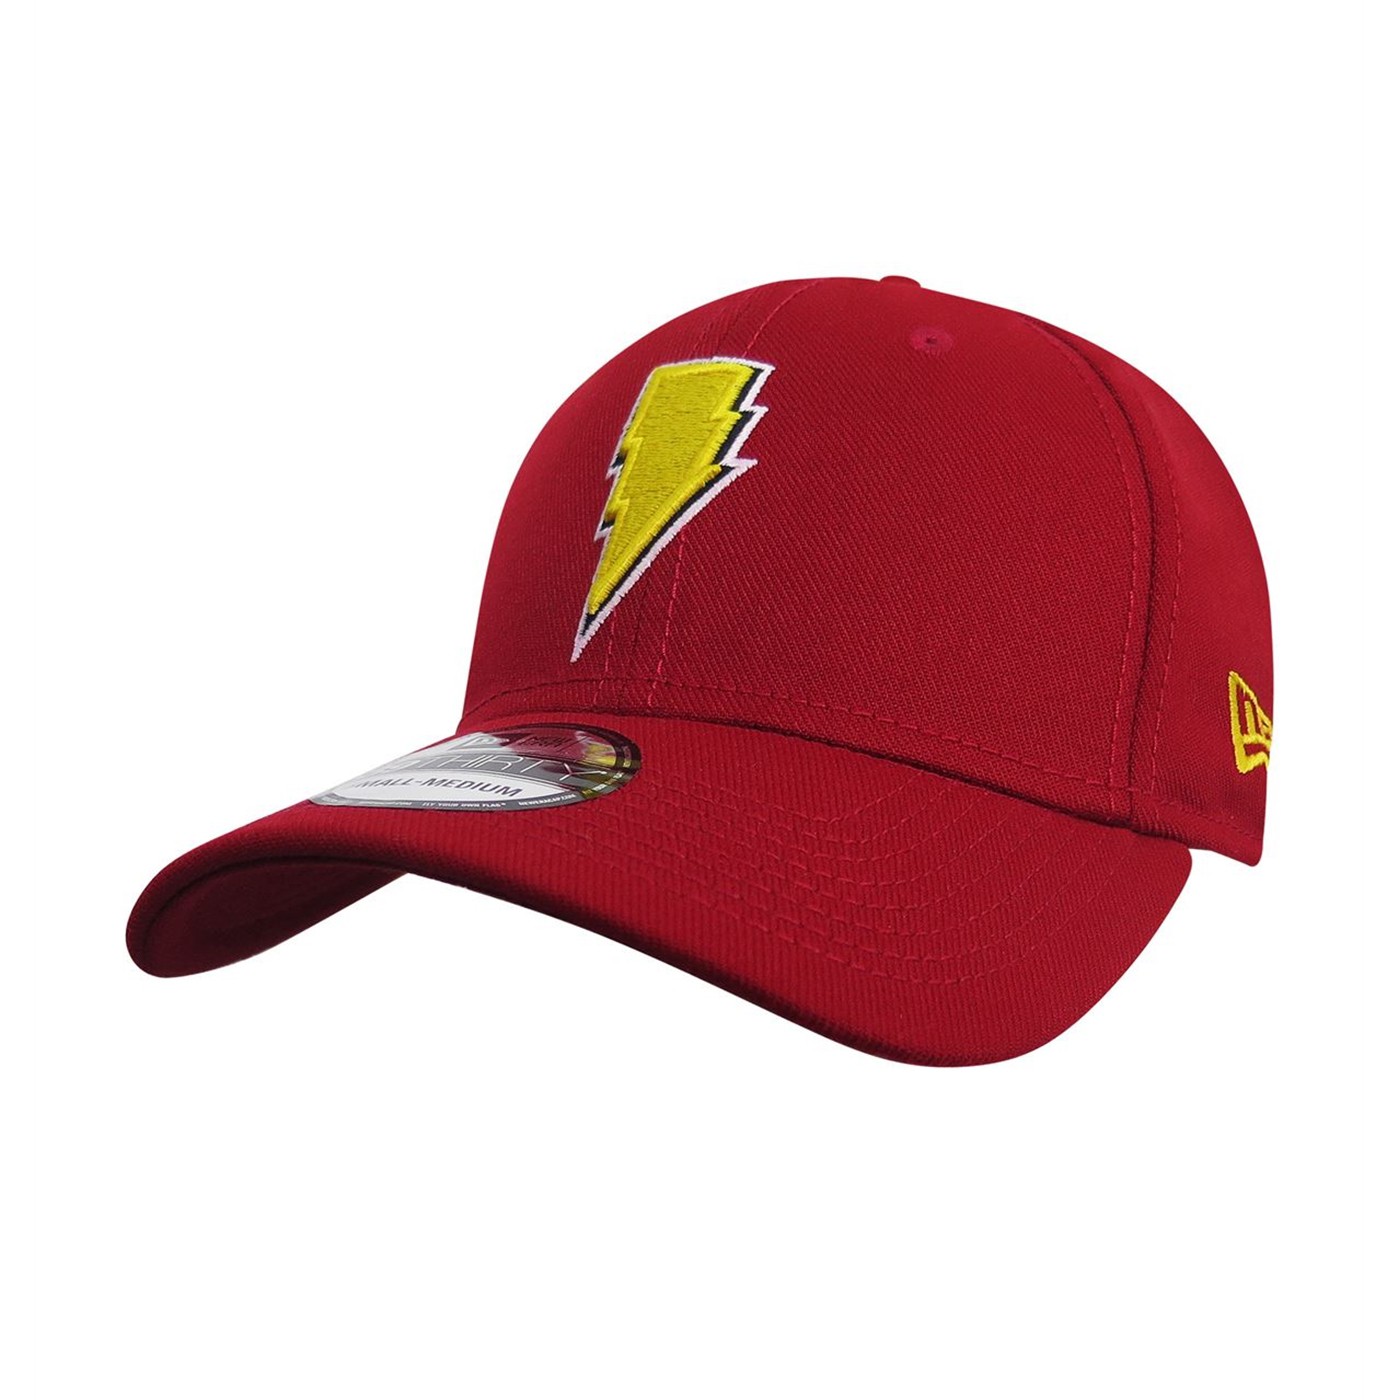 Shazam Captain Marvel Logo 39Thirty Fitted Hat